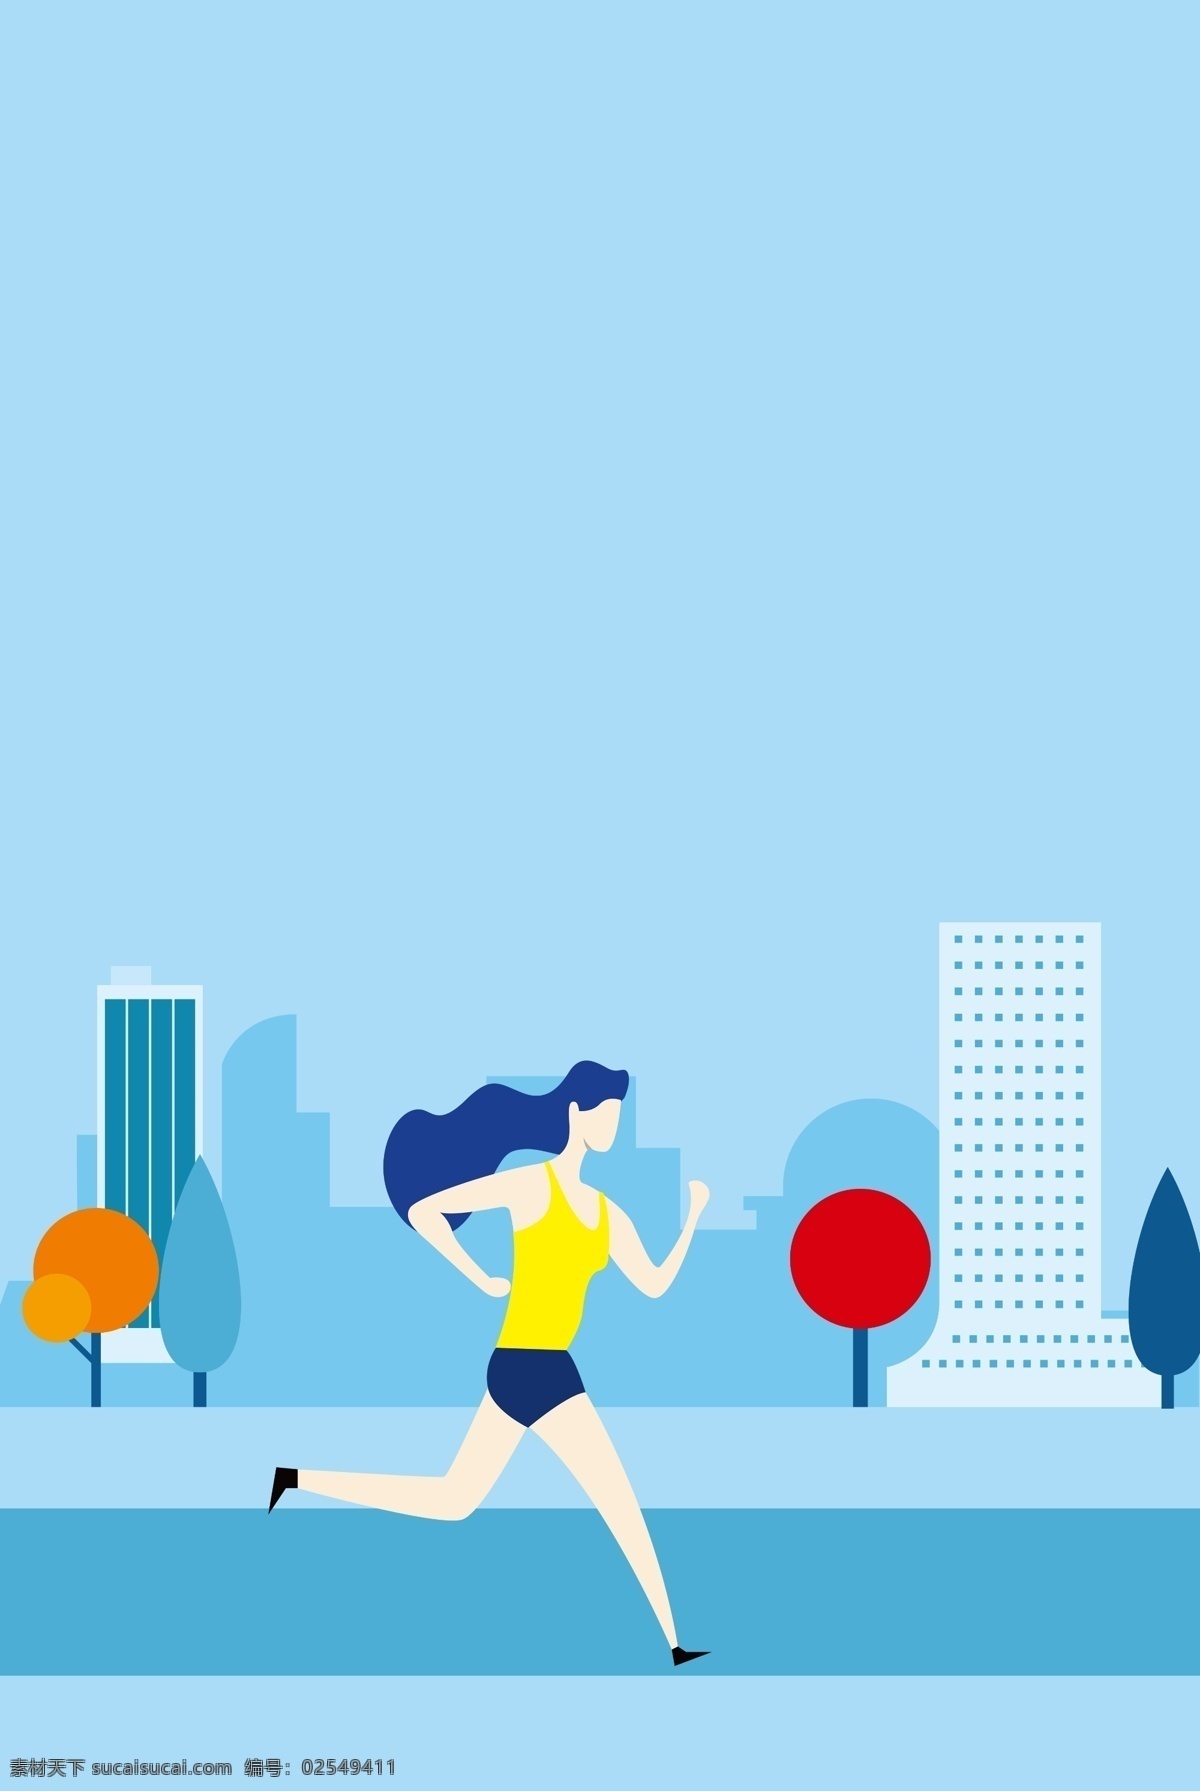 蓝色 小 清新 扁平化 奔跑 广告 背景 跑步 运动 锻炼 健身 健康 小清新 广告背景